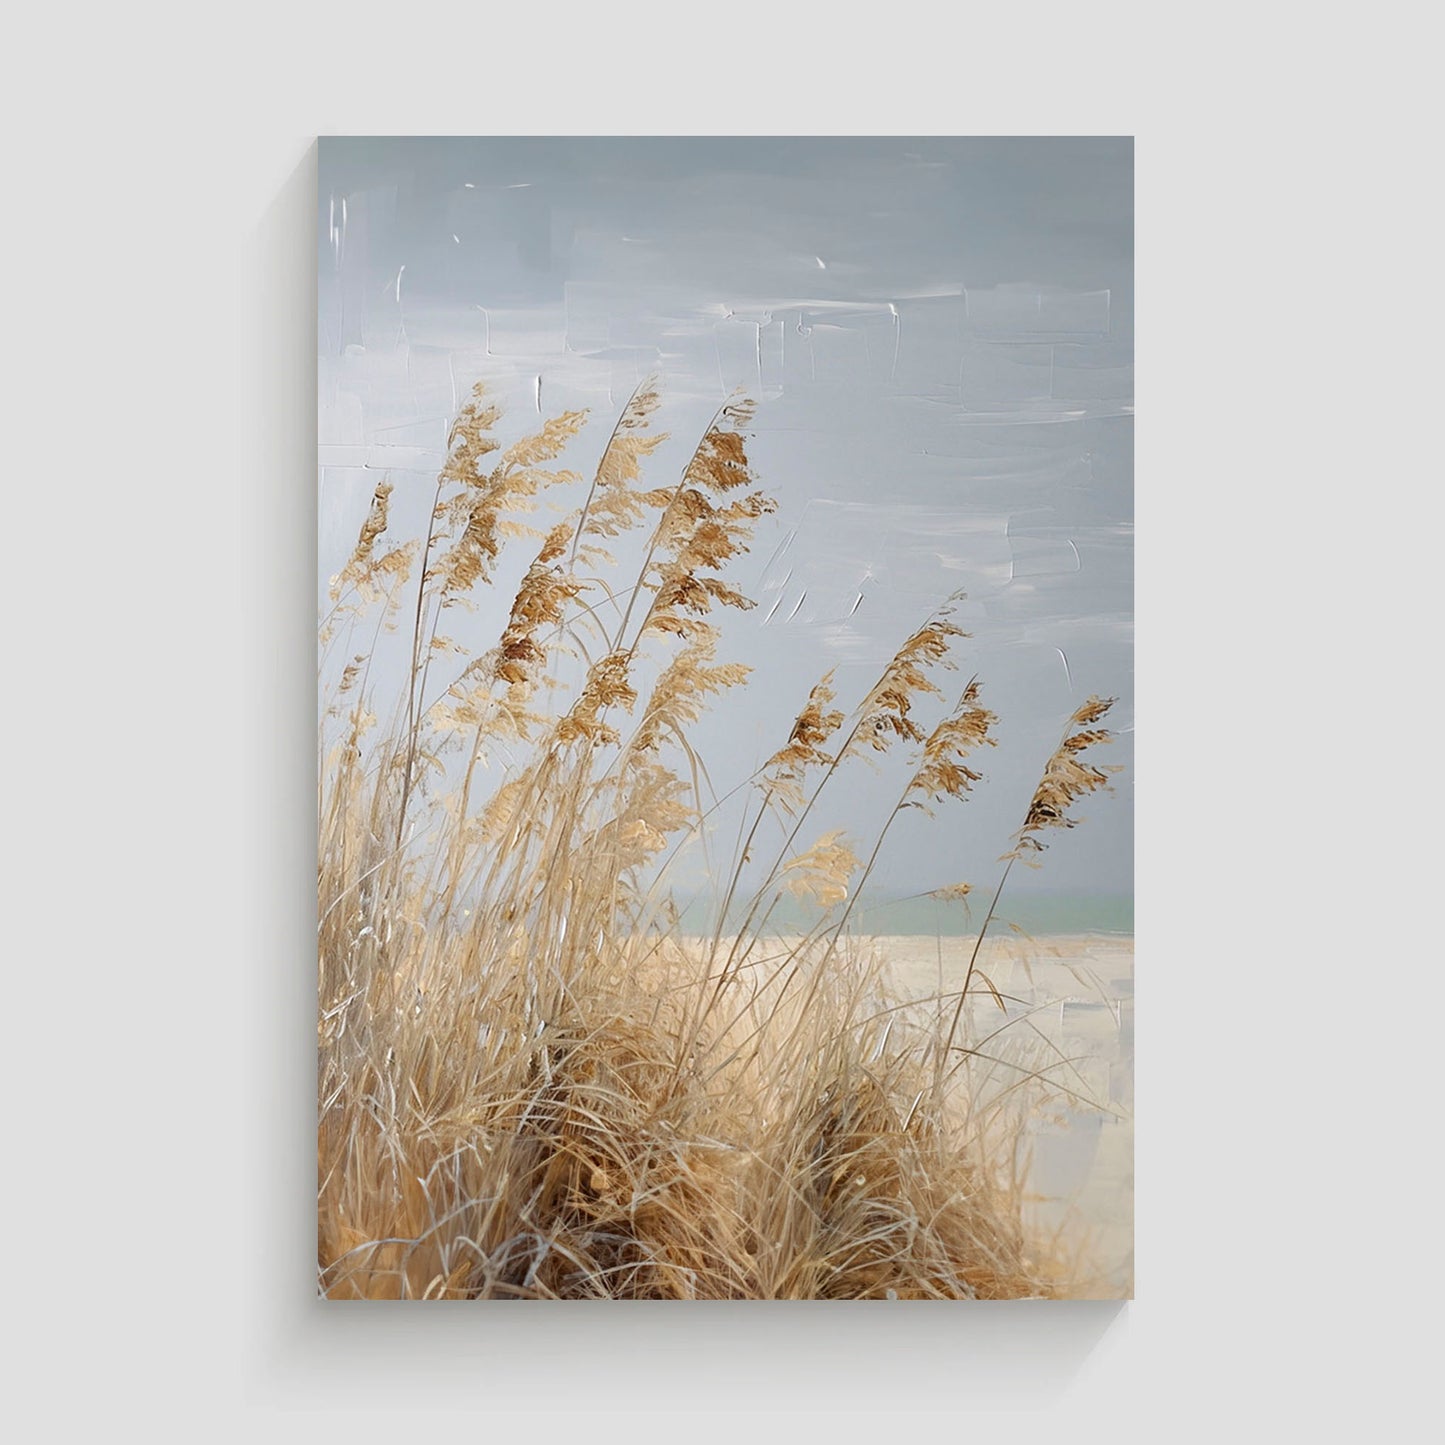 Pintura de una playa con hierba seca meciéndose al viento y un paisaje costero en tonos suaves.